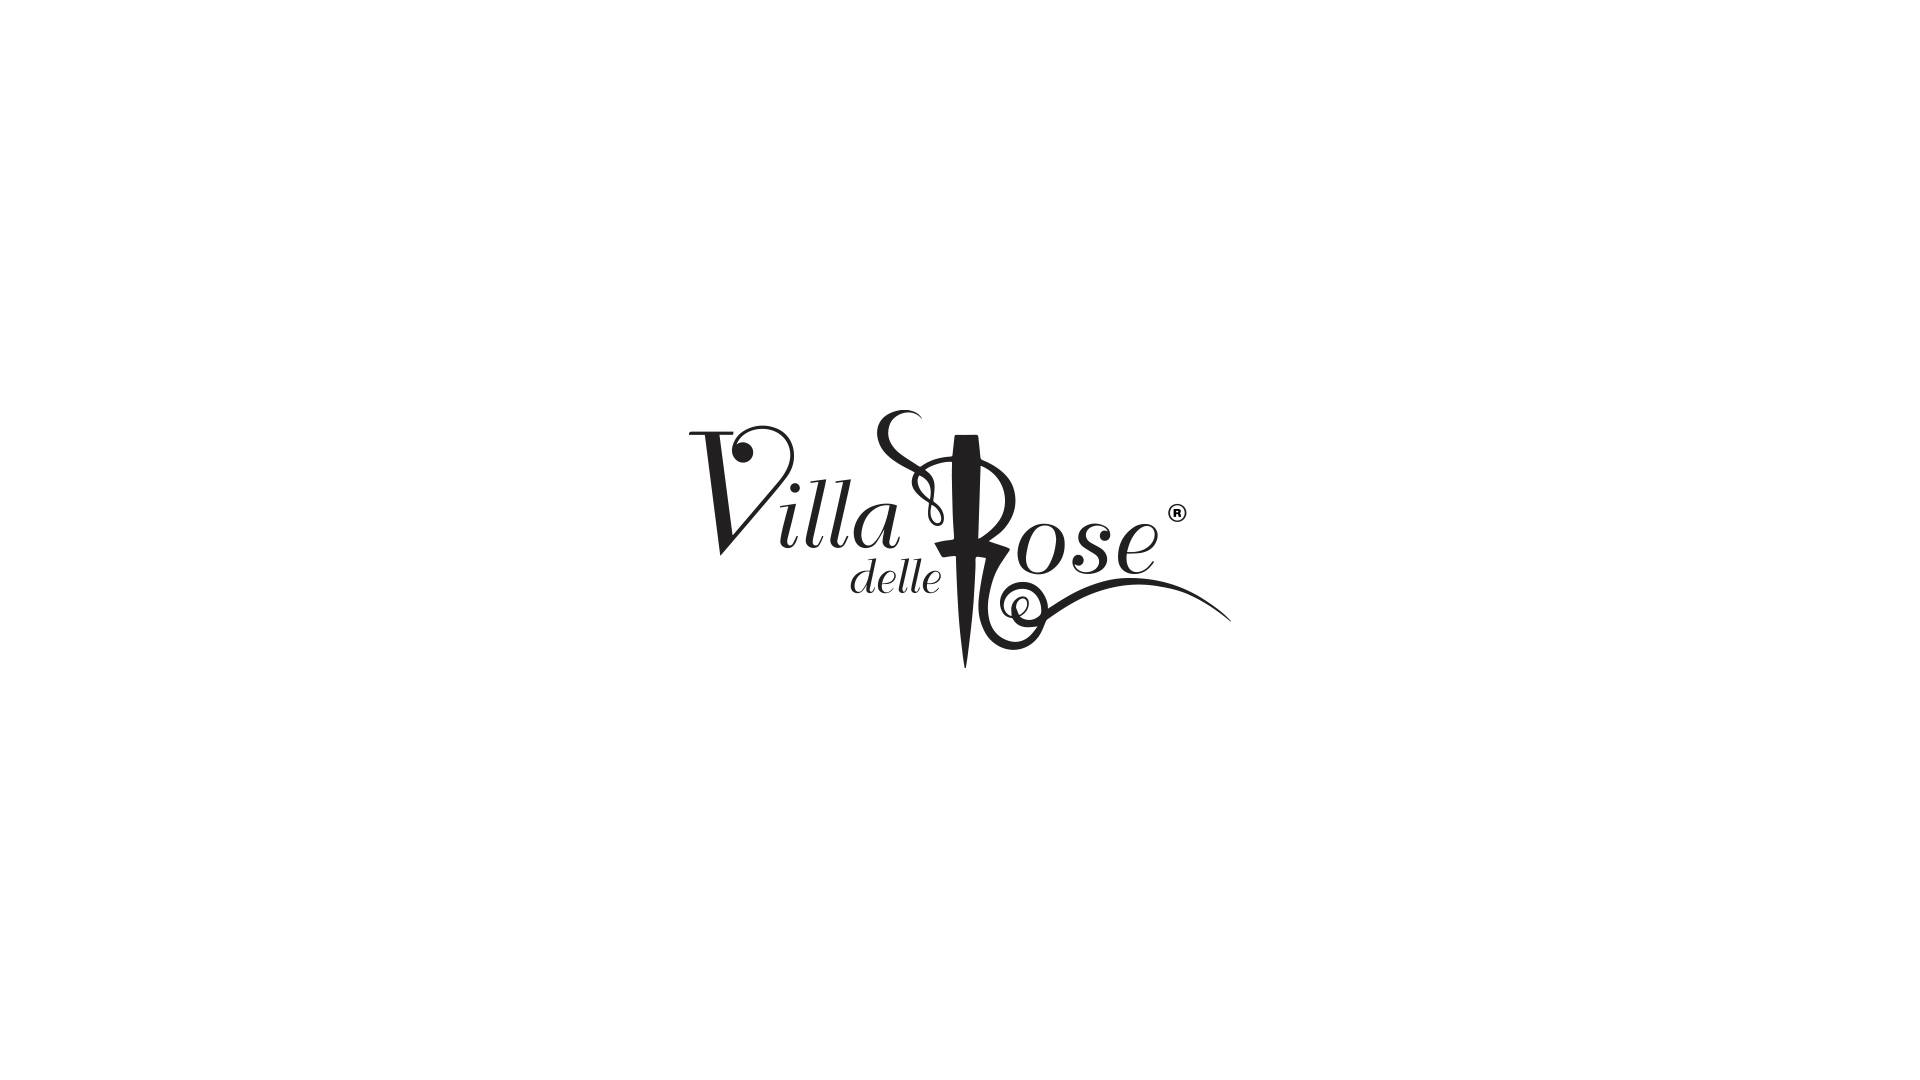 Villa delle Rose discoteca di Riccione, Ferragosto 2021 parte II